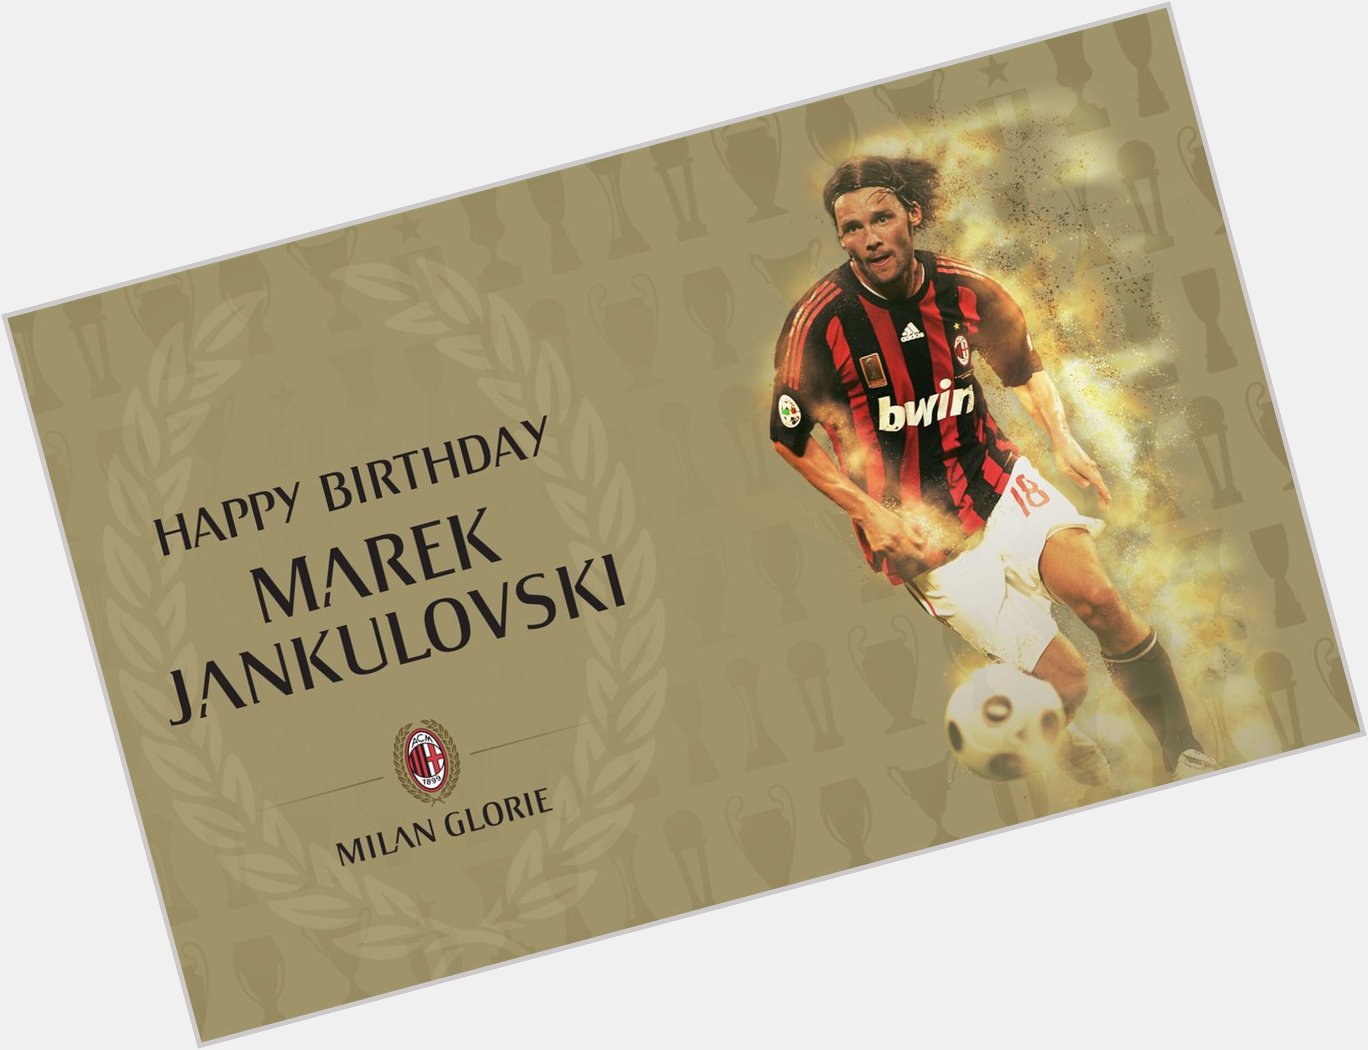 Champions League European Super Cup FIFA Club World Cup Scudetto Happy 40th birthday Marek Jankulovski
 